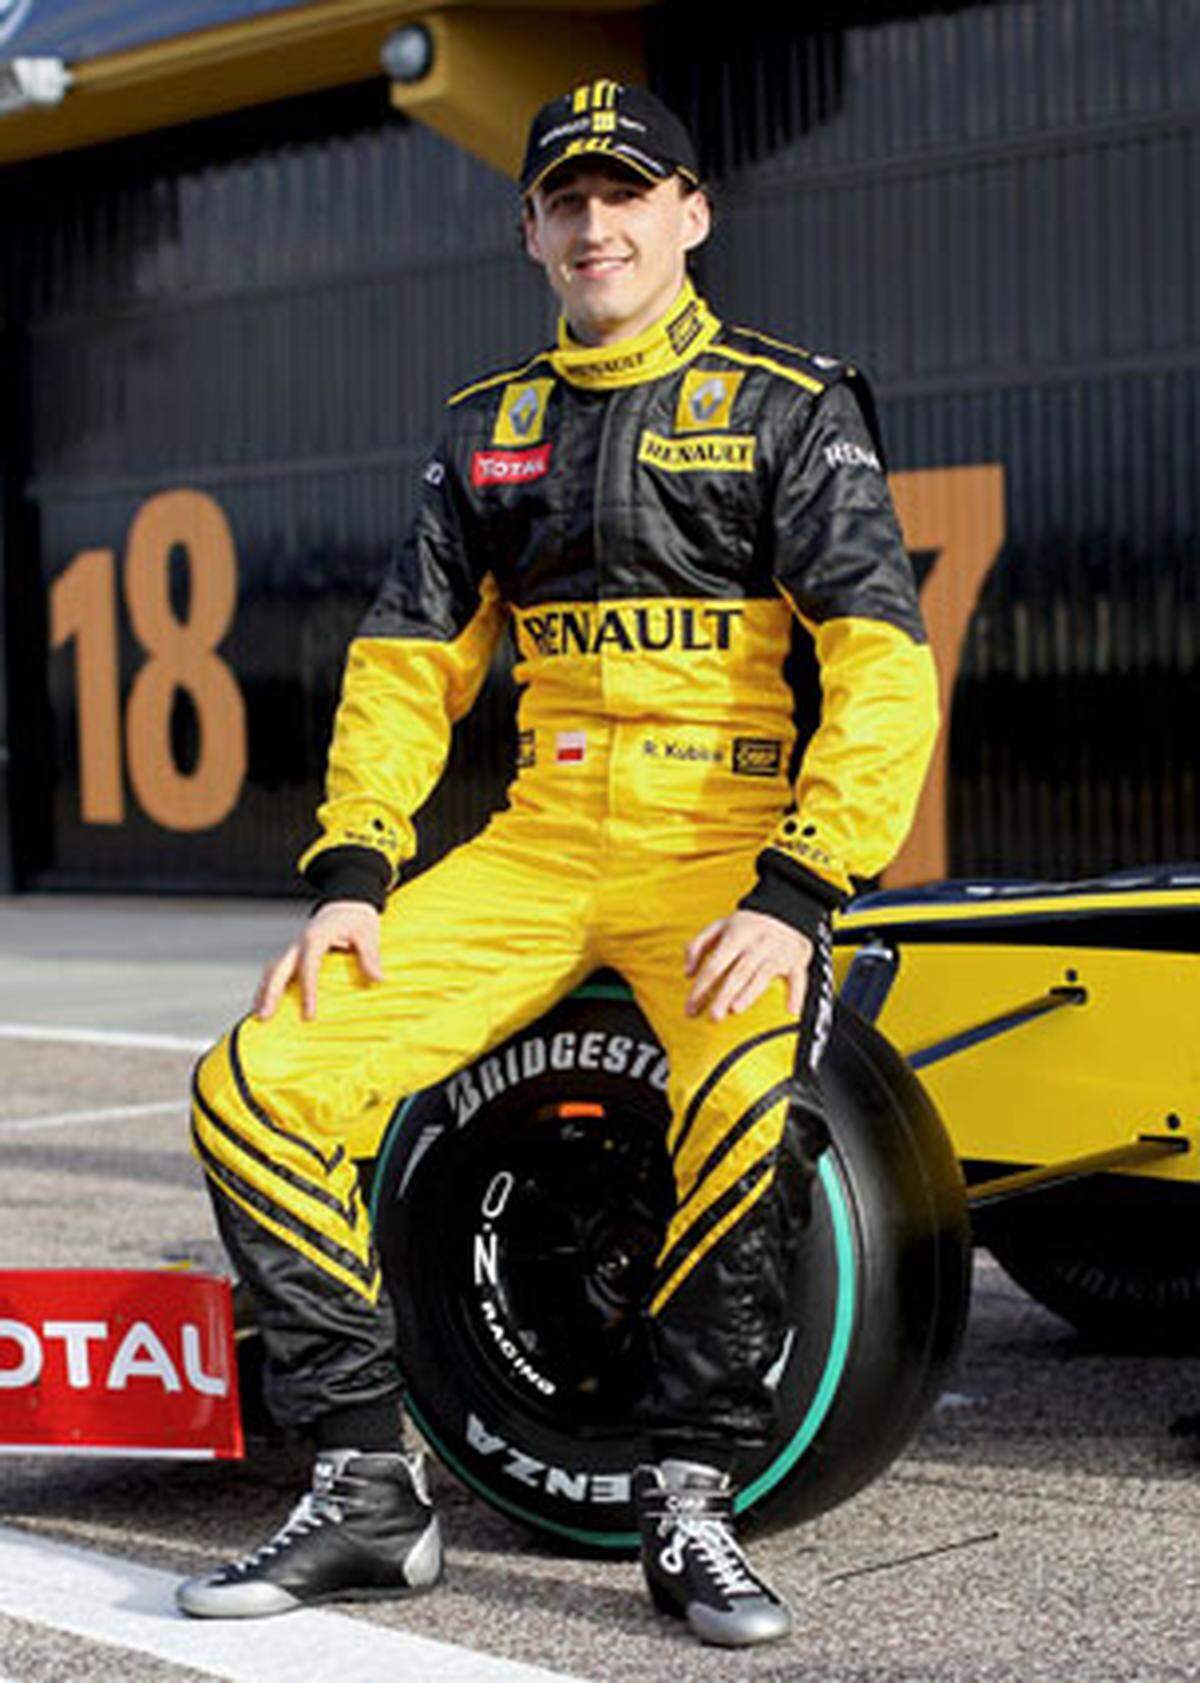 Nach dem Ausstieg von BMW fährt der Pole künftig bei Renault, wo er Nachfolger von Alonso wird.